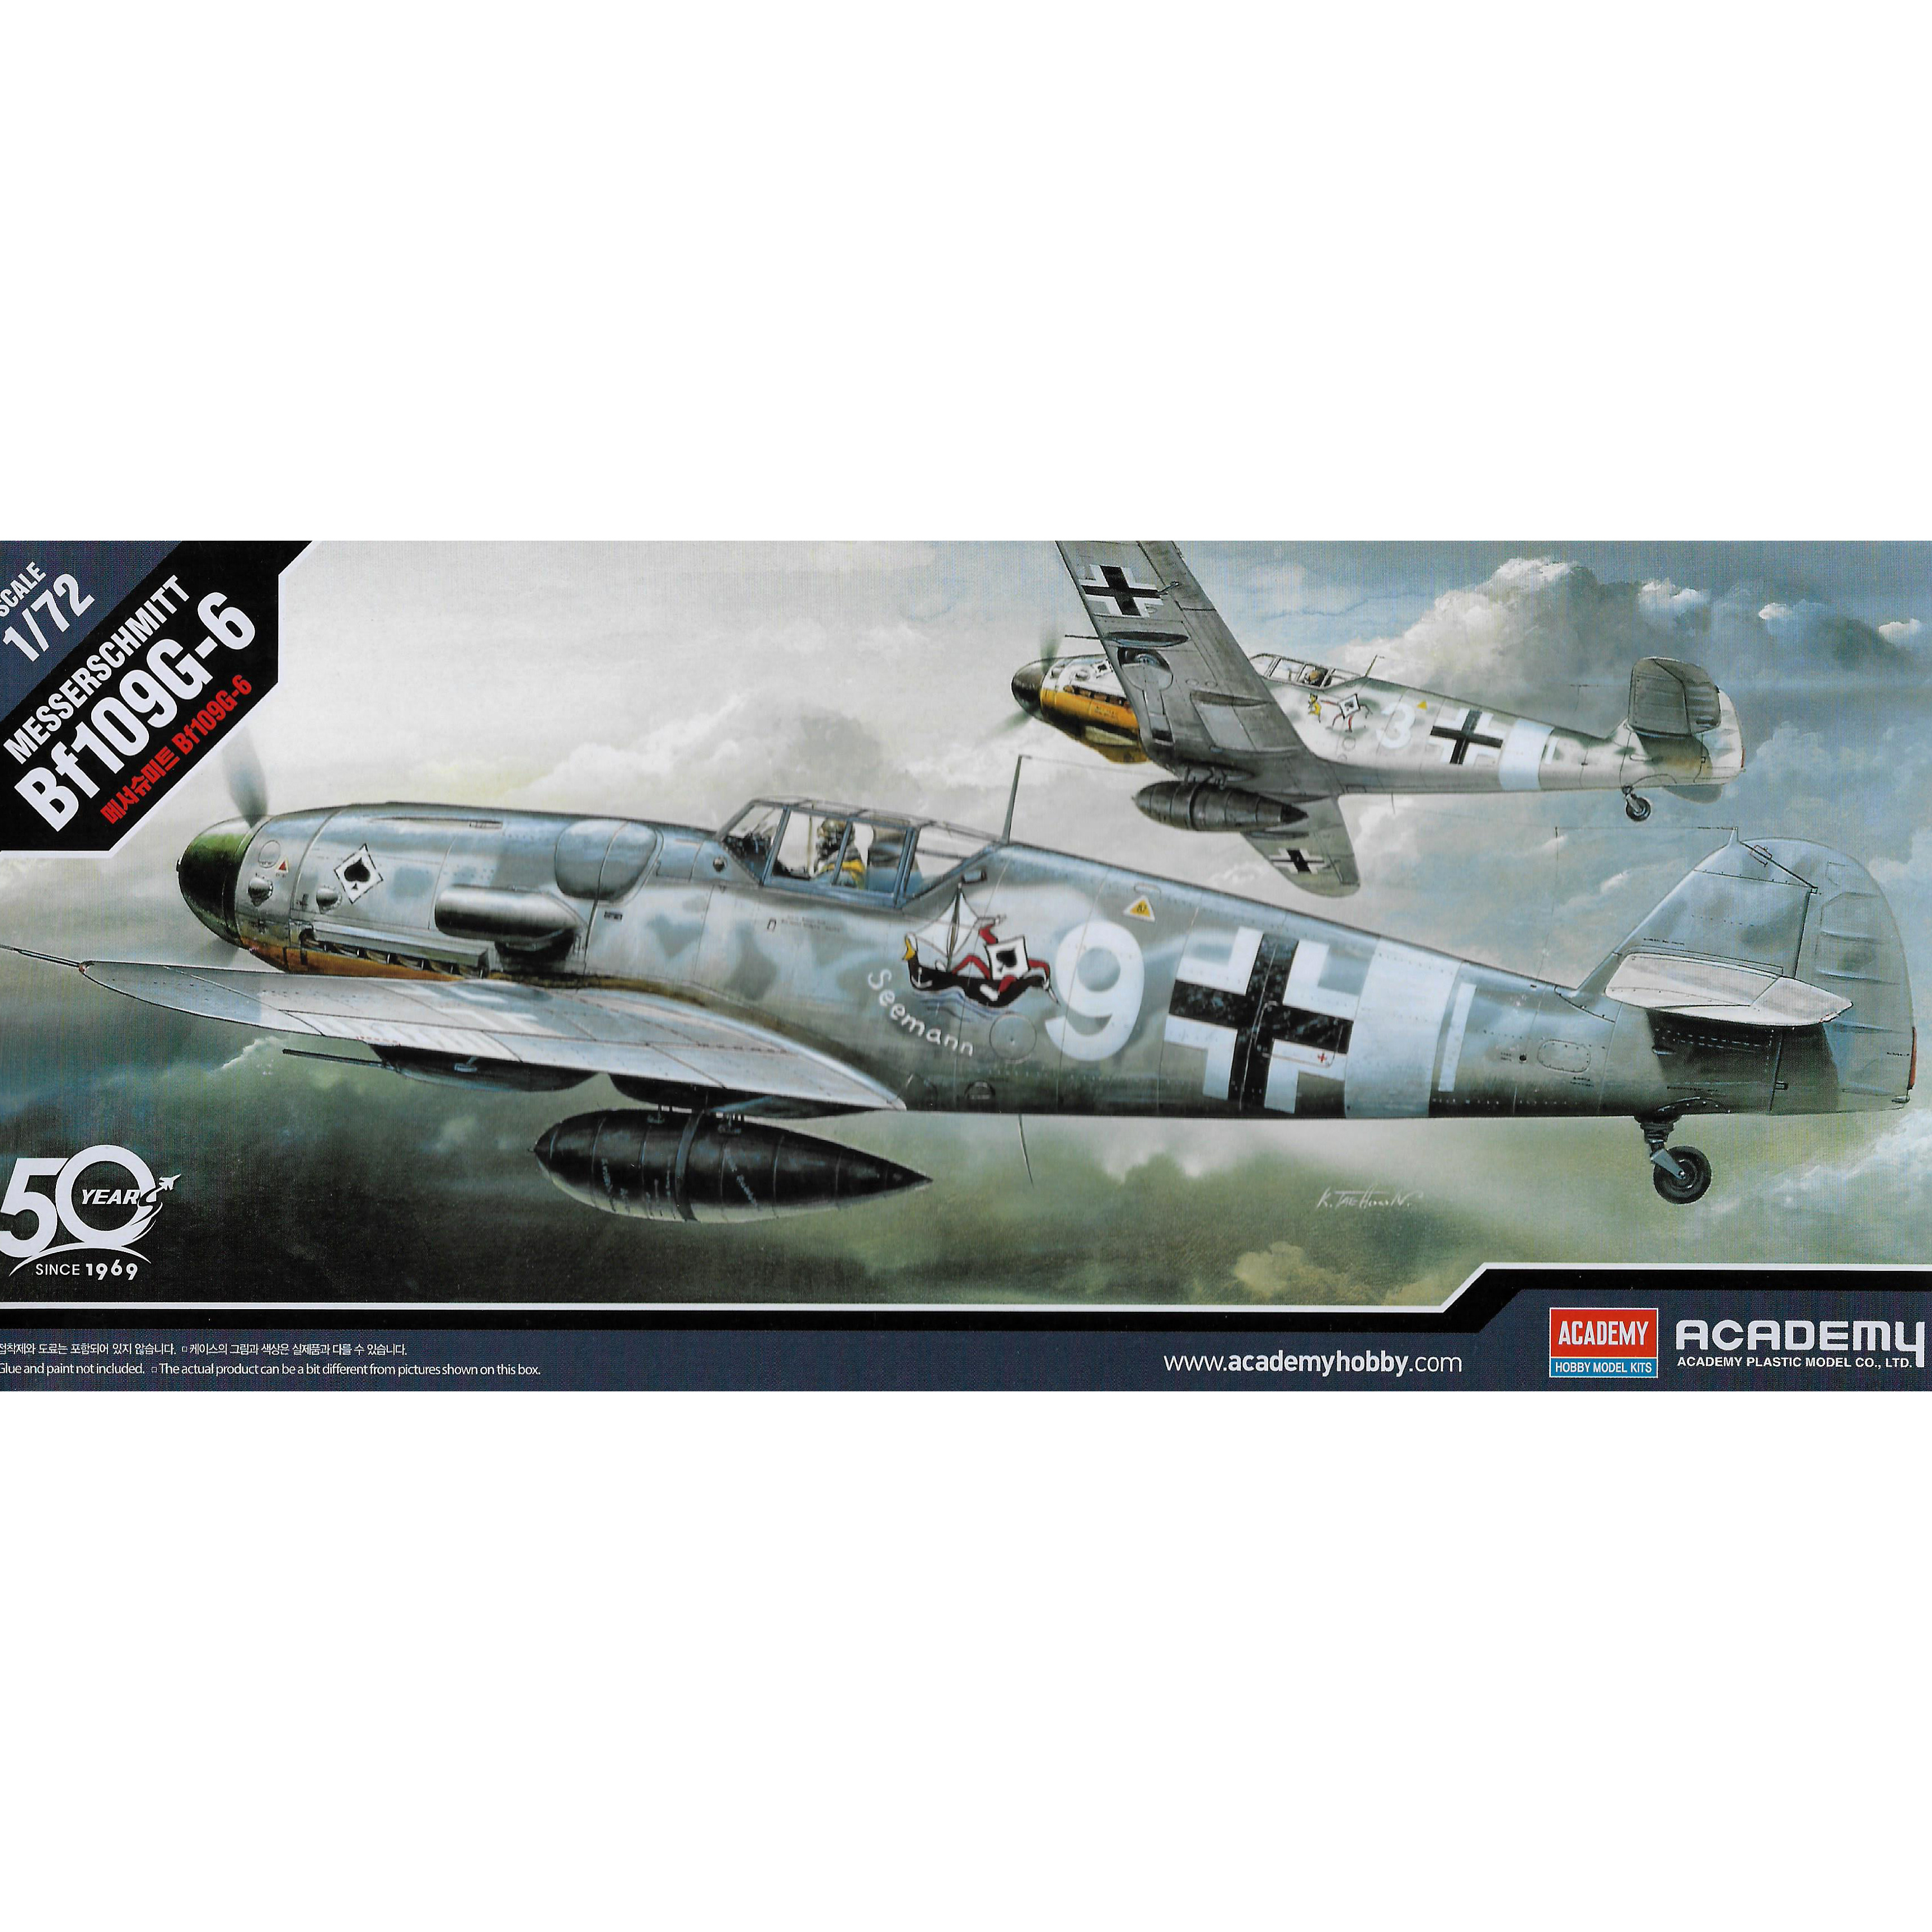 12467 Academy 1/72 Messerschmitt Bf-109G-6